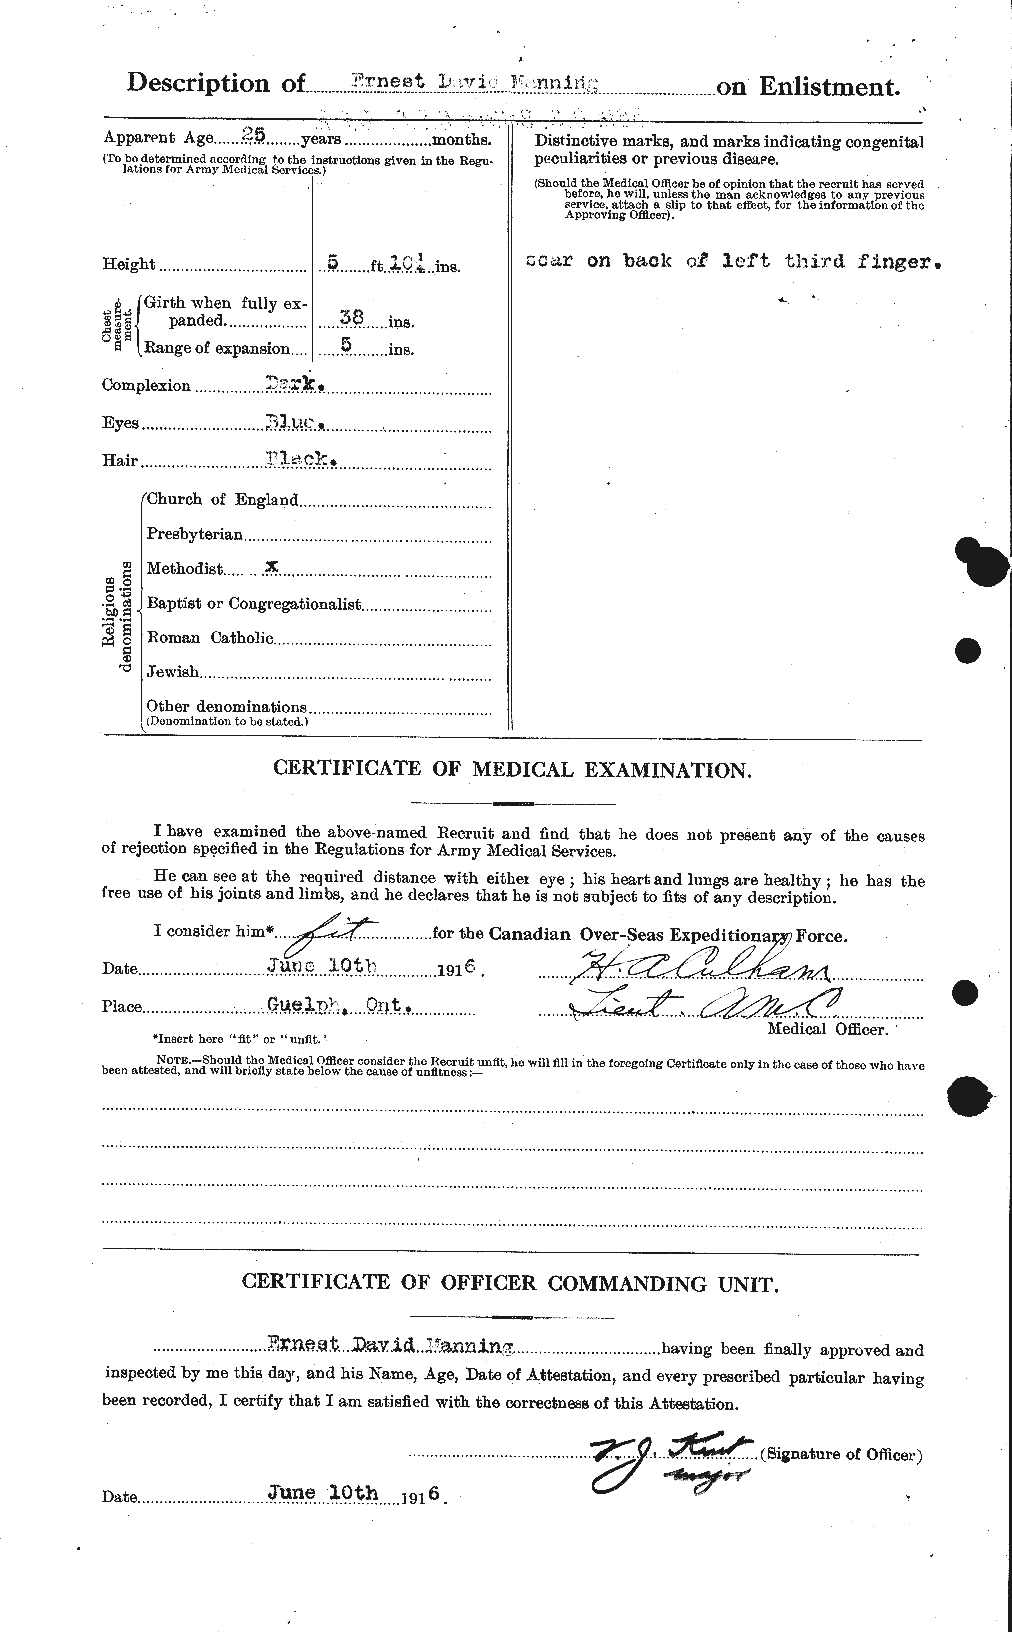 Dossiers du Personnel de la Première Guerre mondiale - CEC 479619b